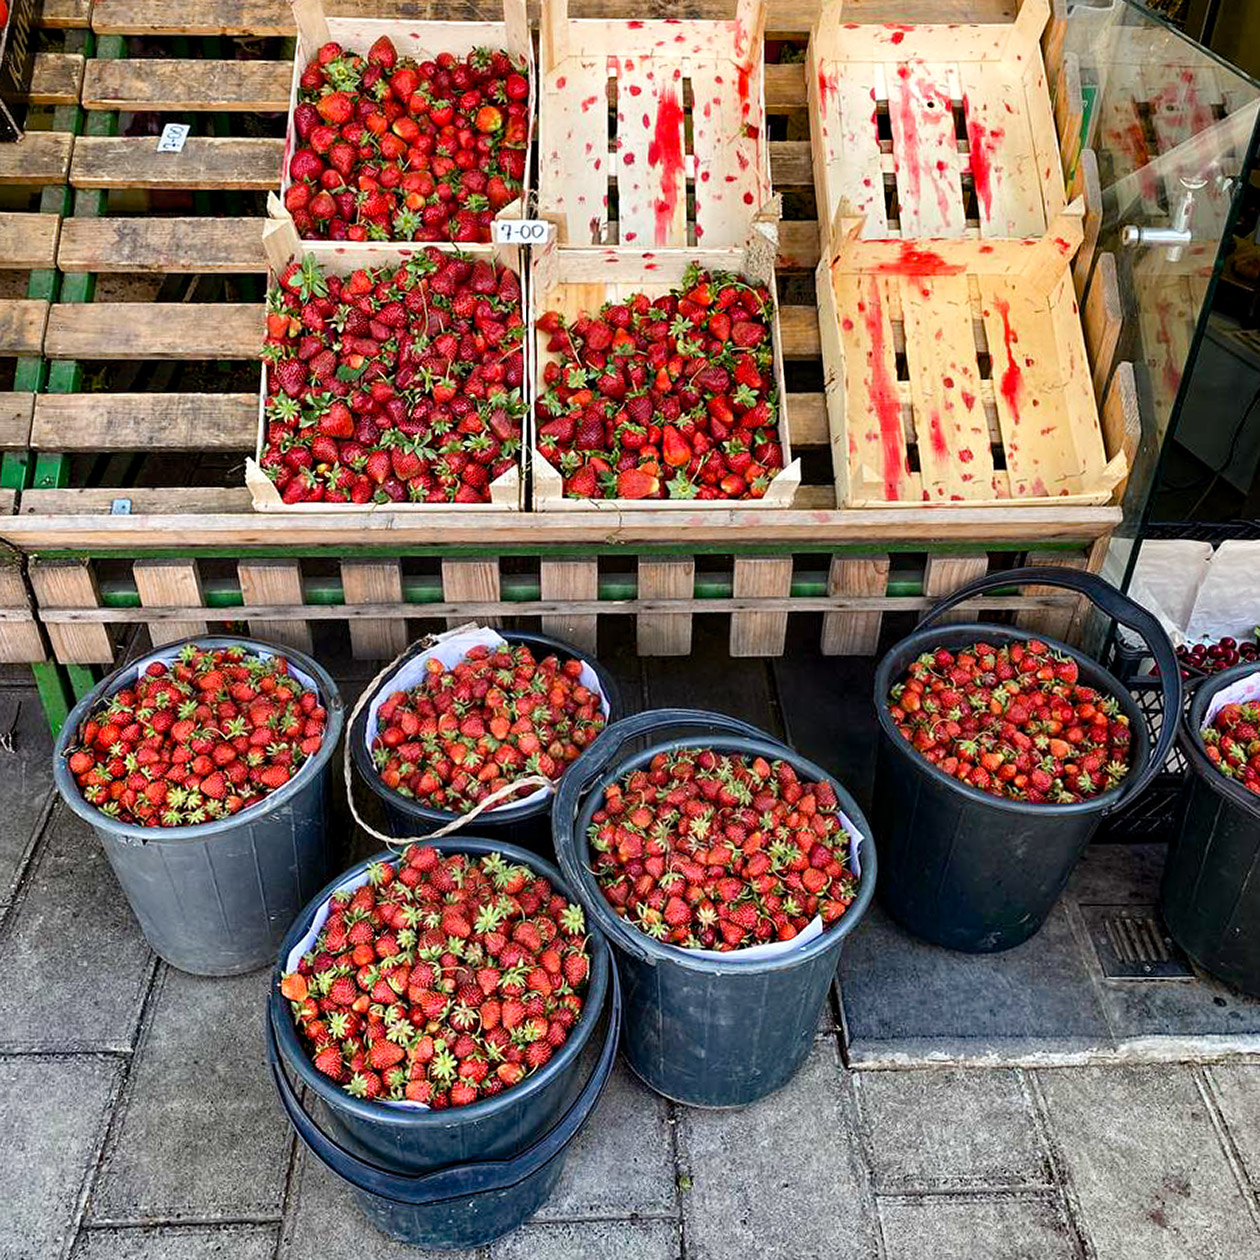 В районе, где я живу, ягоды стоят почти в два раза дороже, чем на рынке. Но пройти мимо ароматных ведерок с клубникой невозможно